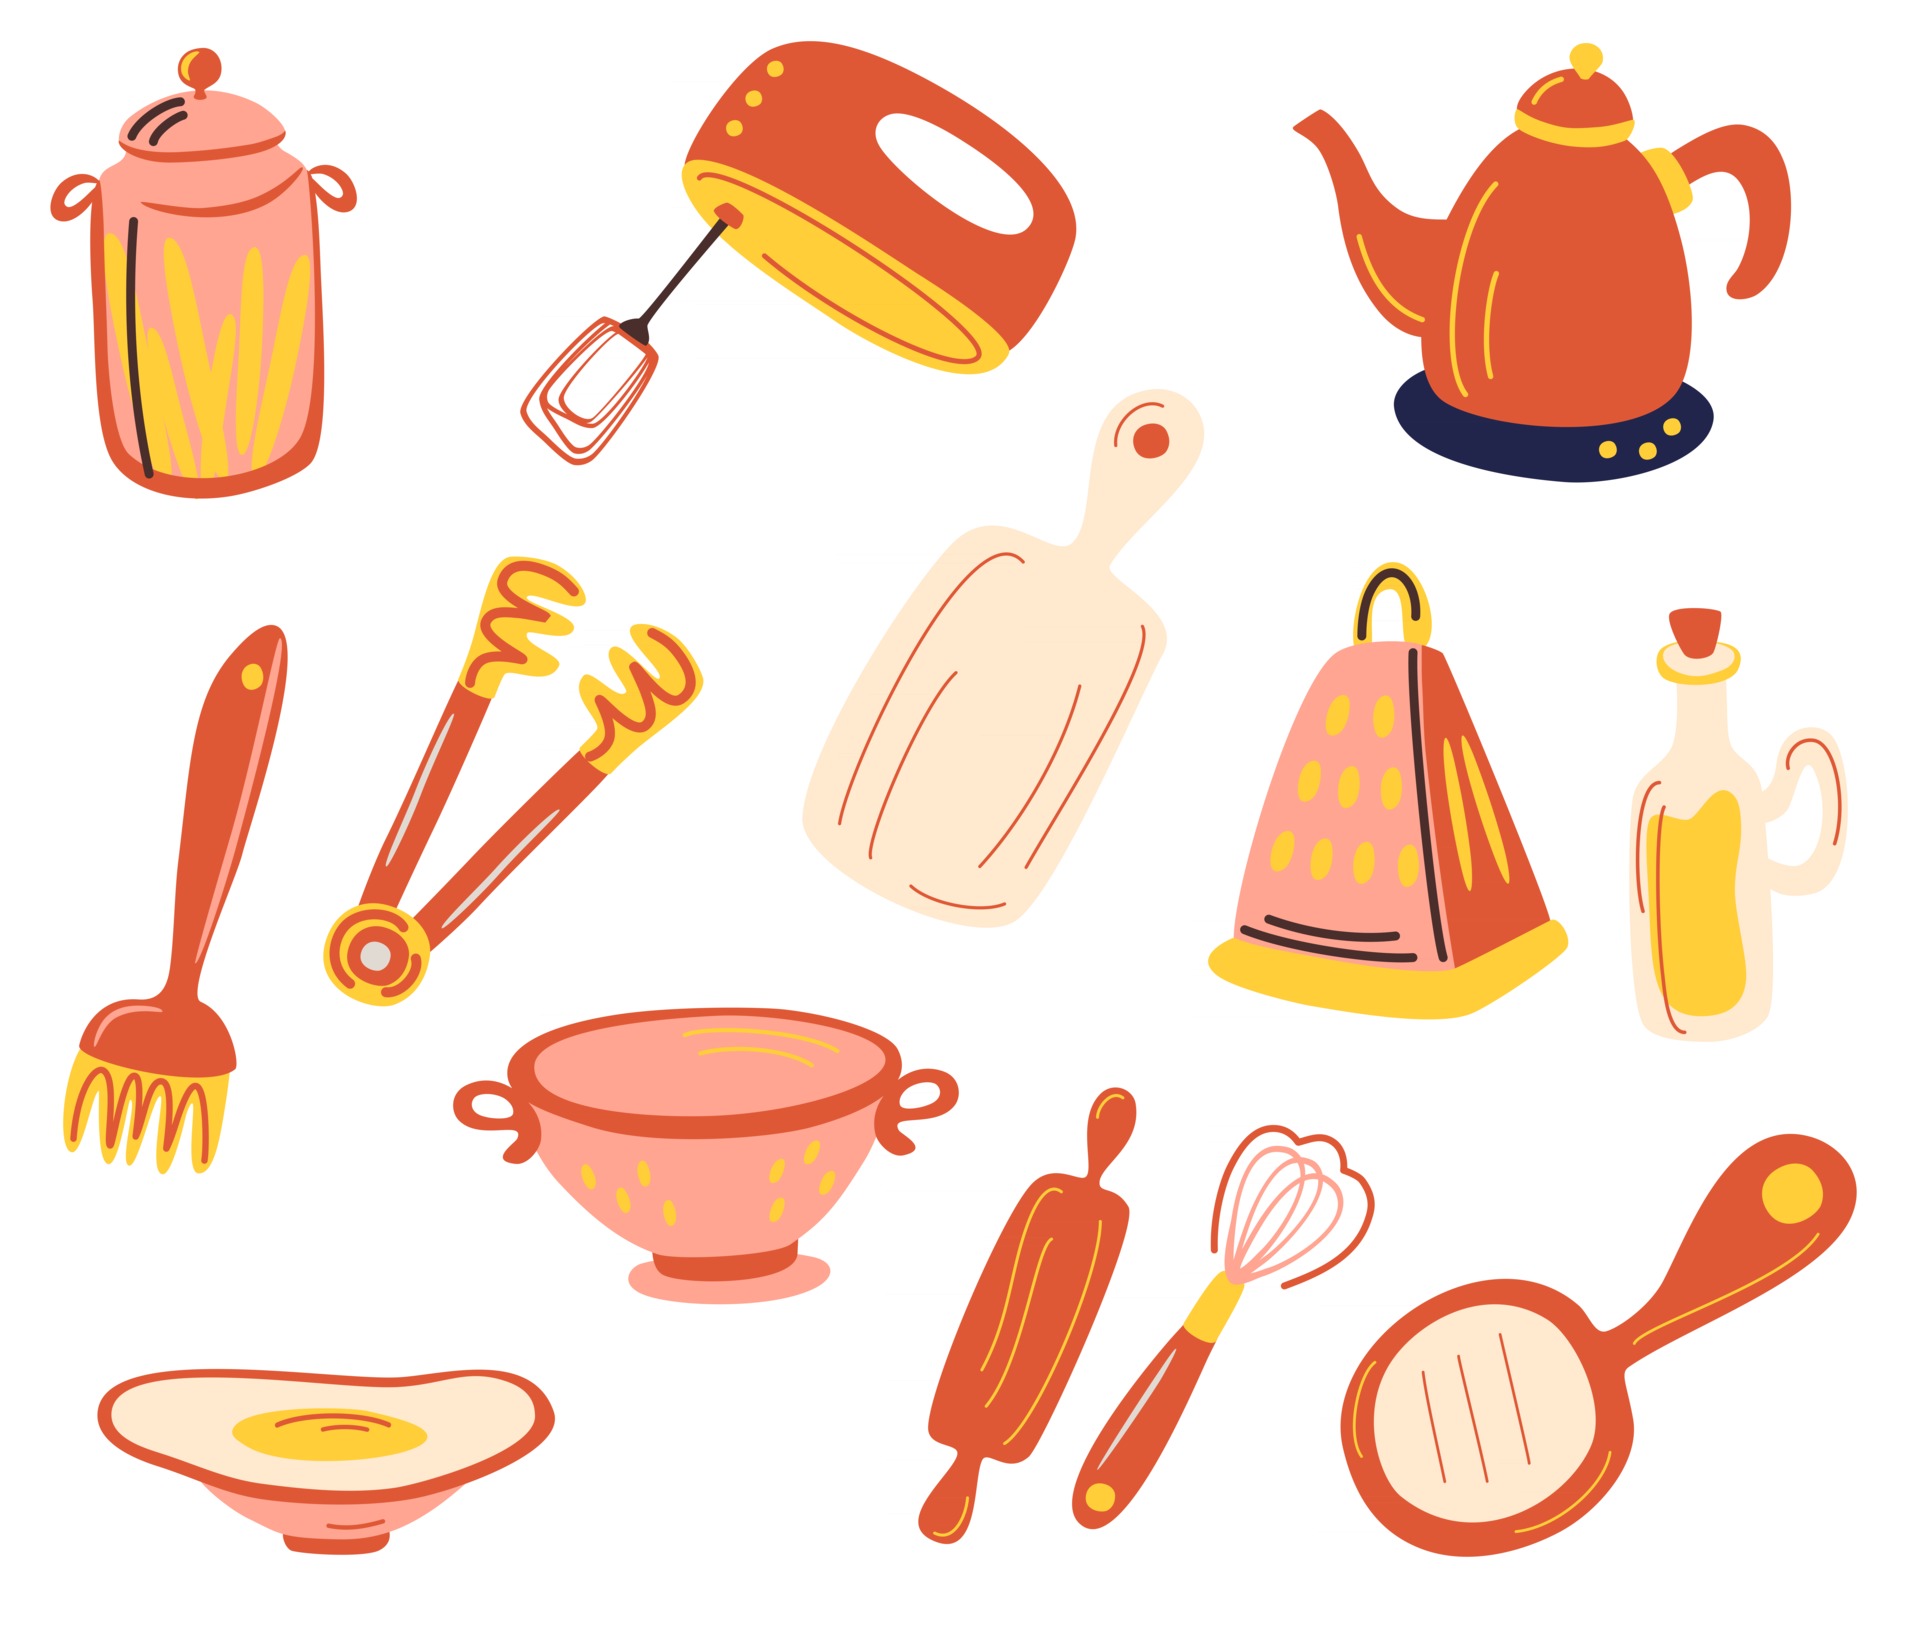 cosas de cocina. juego de utensilios de cocina con sartenes, platos, taza,  tetera, hervidor, balanza de